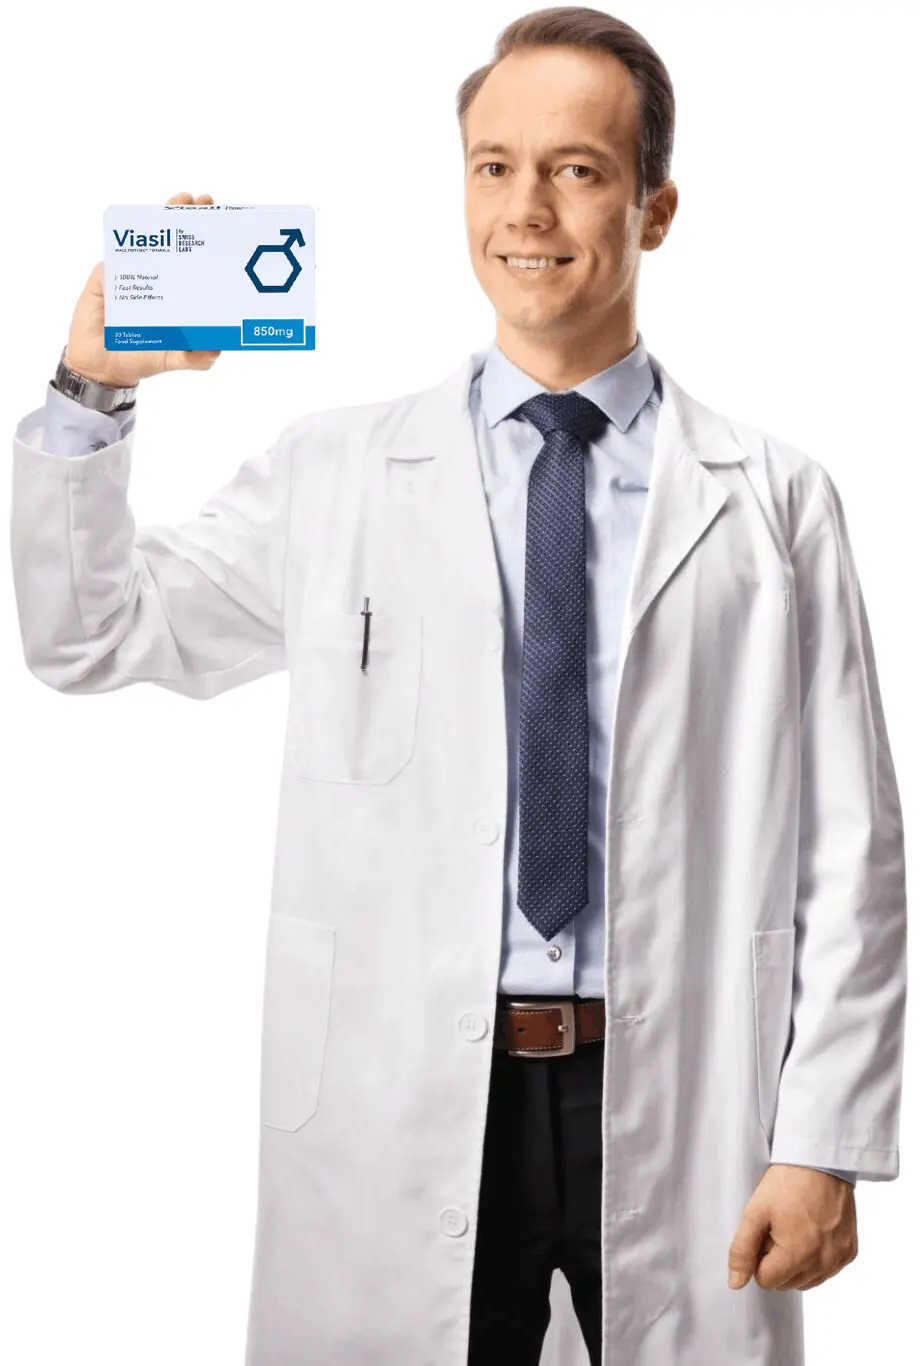 doctor holding viasil